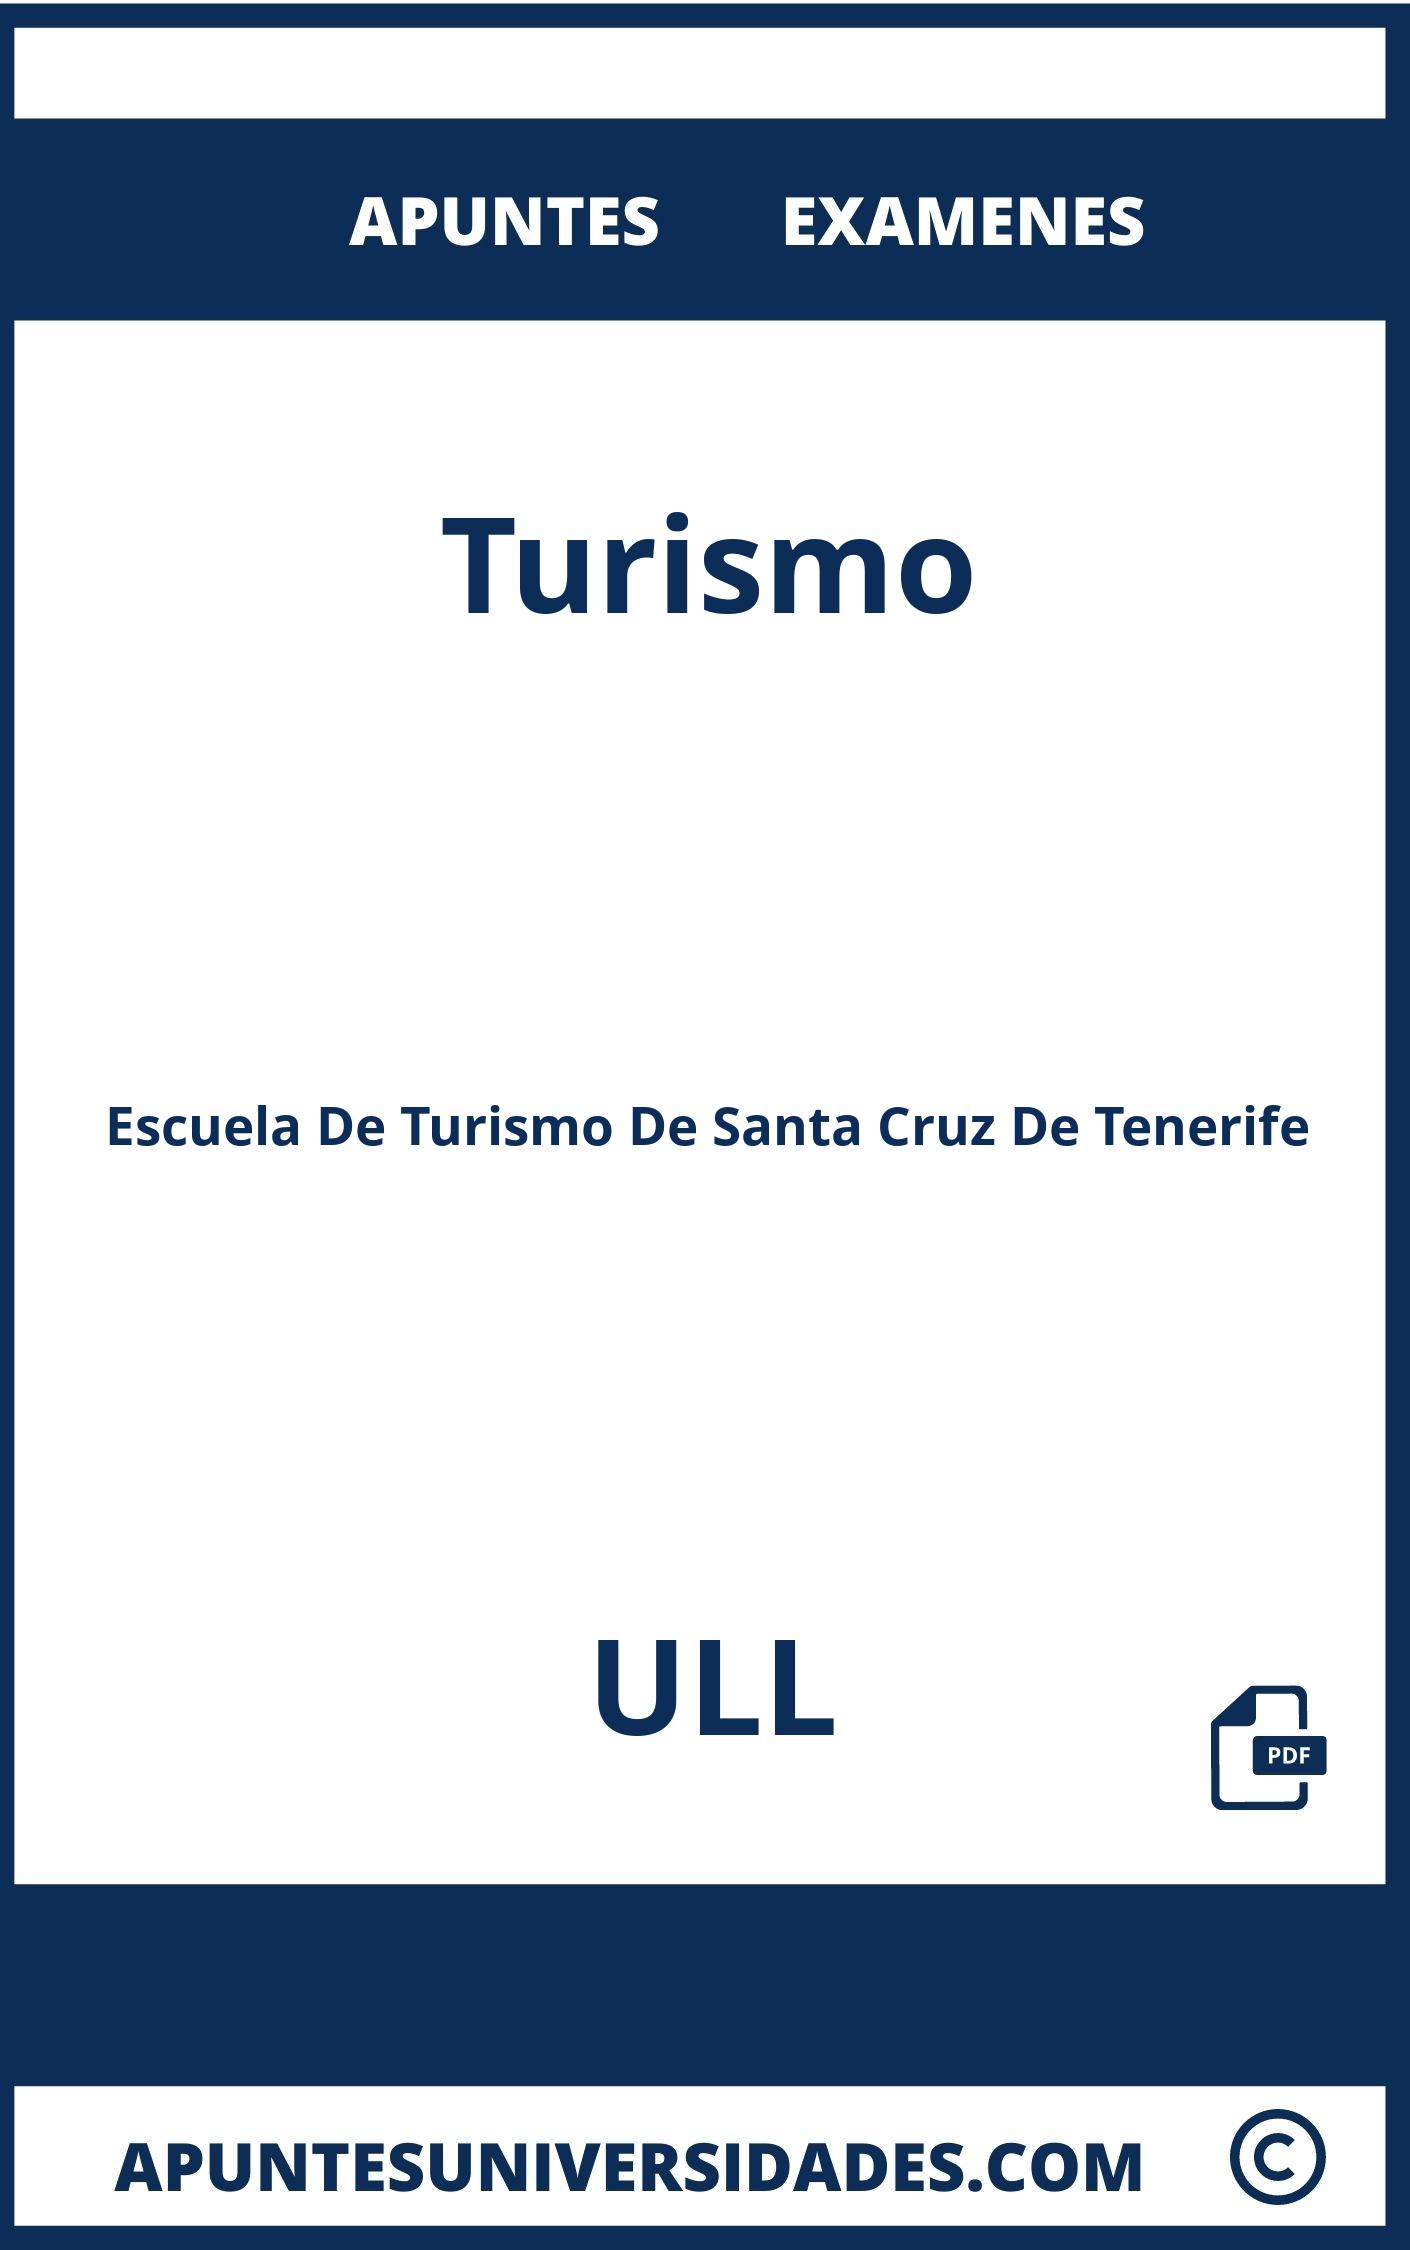 Apuntes Examenes Turismo ULL